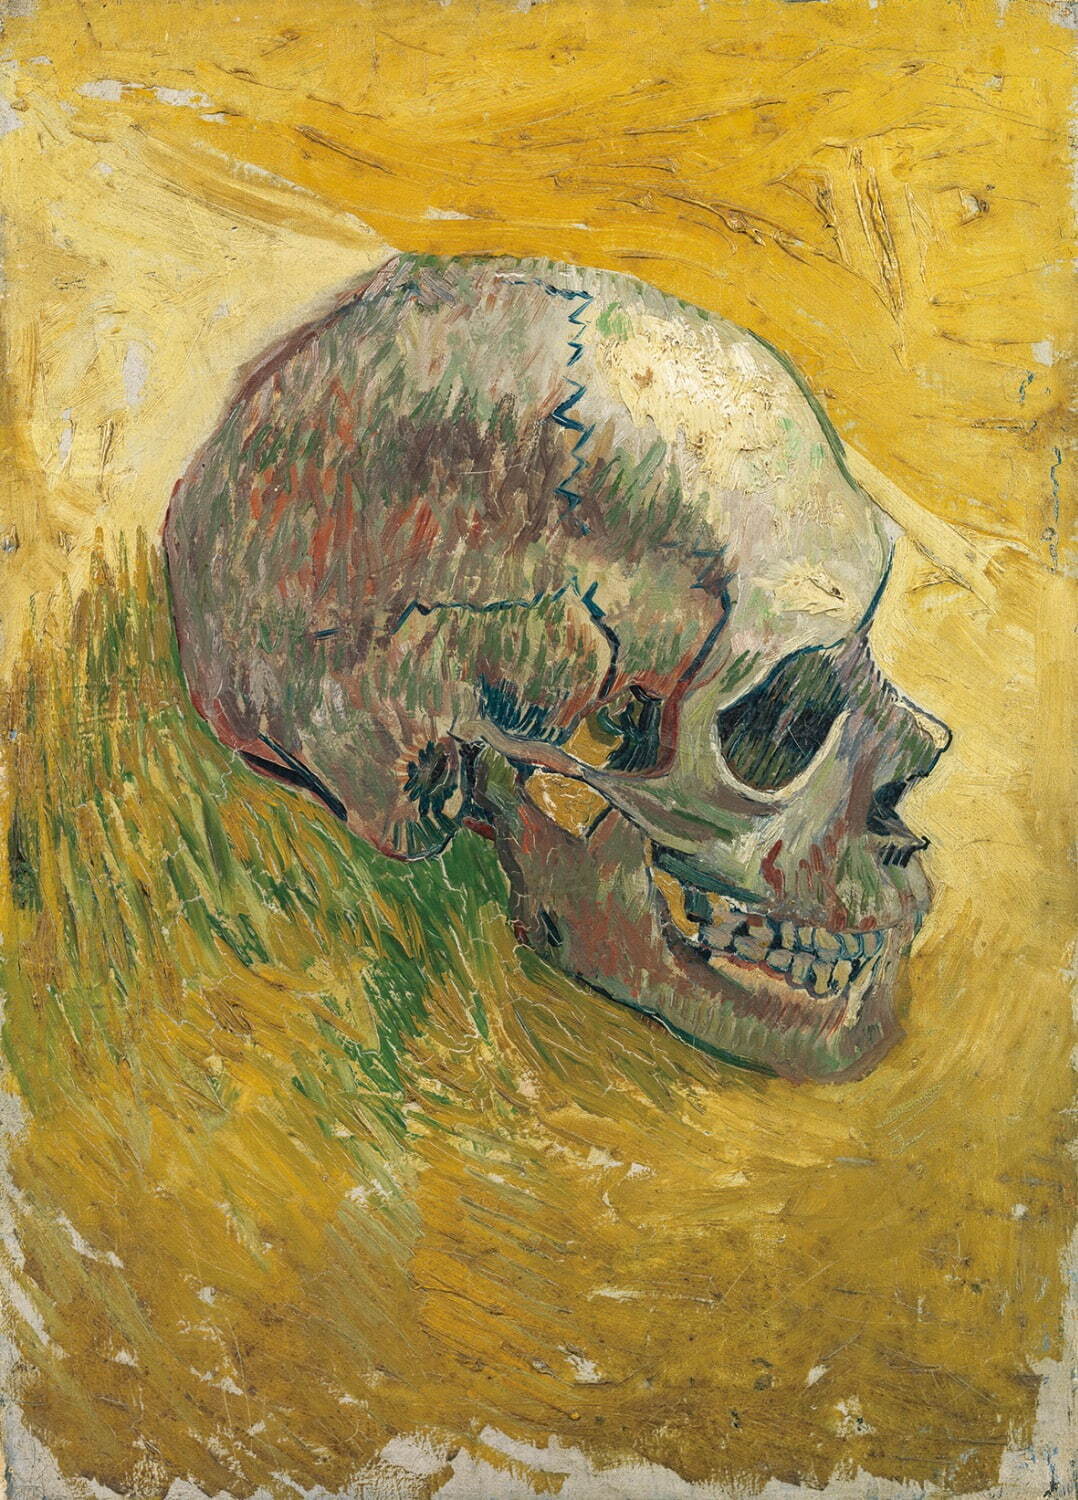 フィンセント・ファン・ゴッホ 《髑髏》
1887年 油彩／キャンヴァス ファン・ゴッホ美術館、アムステルダム(フィンセント・ファン・ゴッホ財団)
Van Gogh Museum, Amsterdam (Vincent van Gogh Foundation)